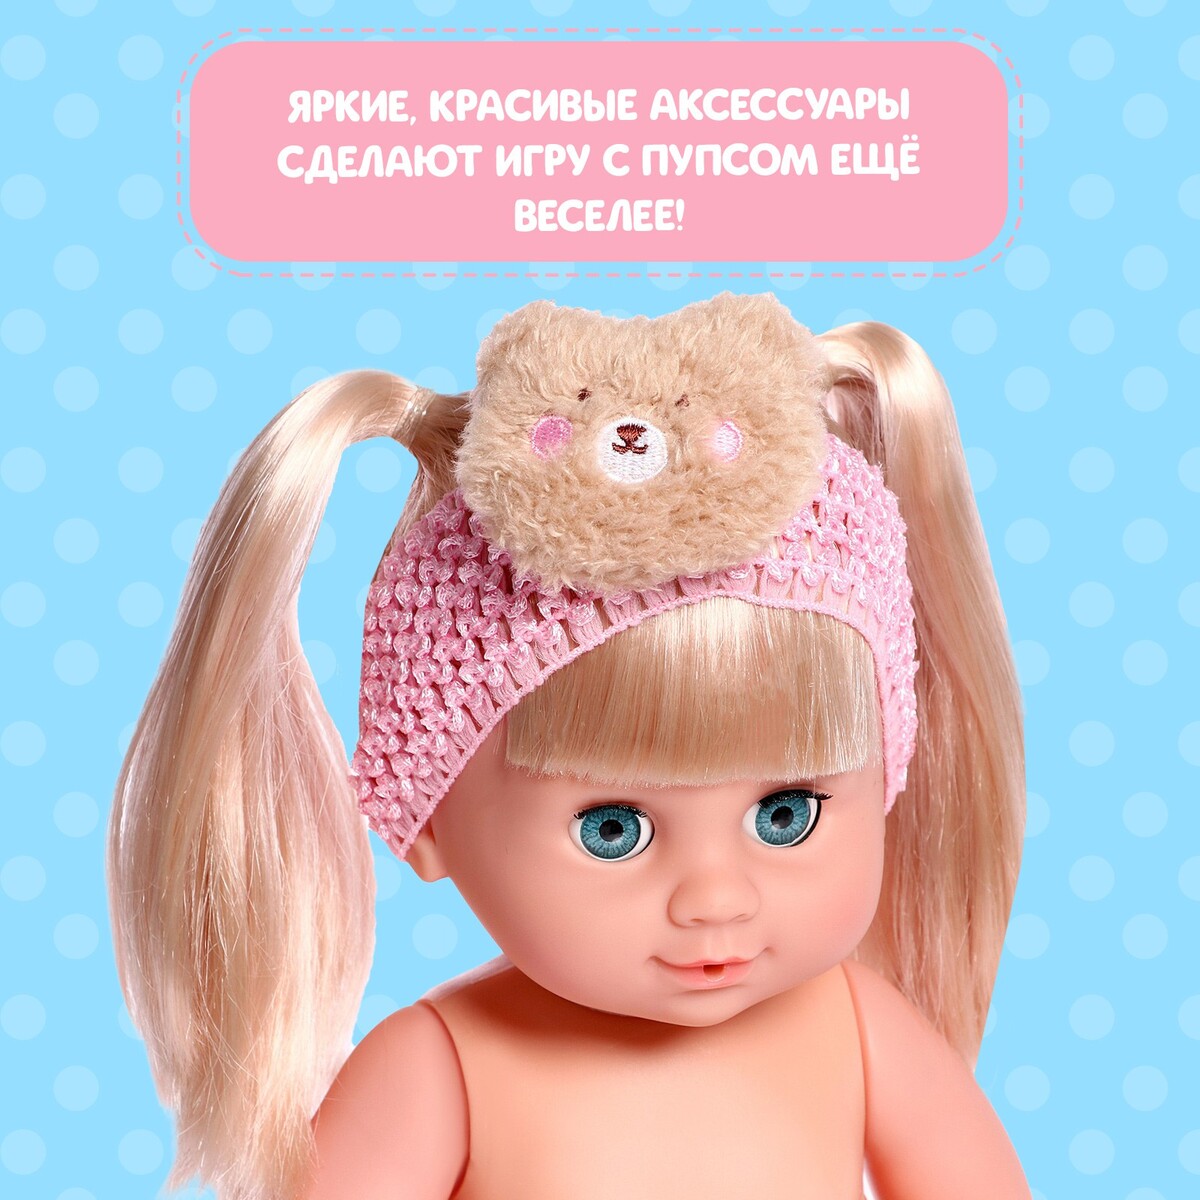 Купить куклы и аксессуары в интернет магазине luchistii-sudak.ru